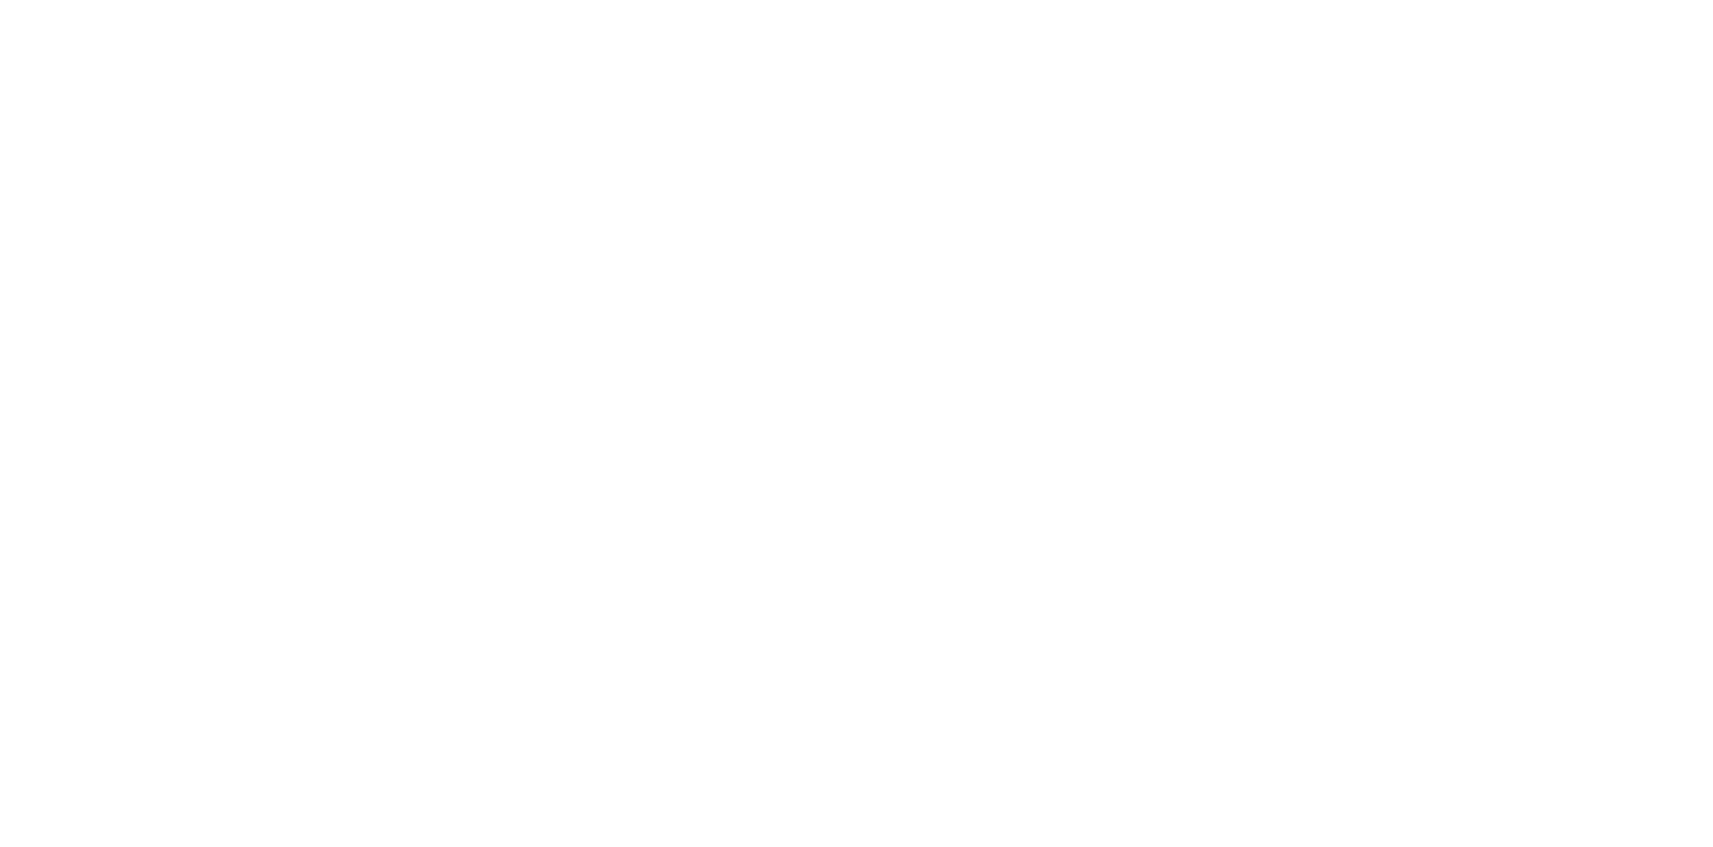 Apyx Medical logo large for dark backgrounds (transparent PNG)